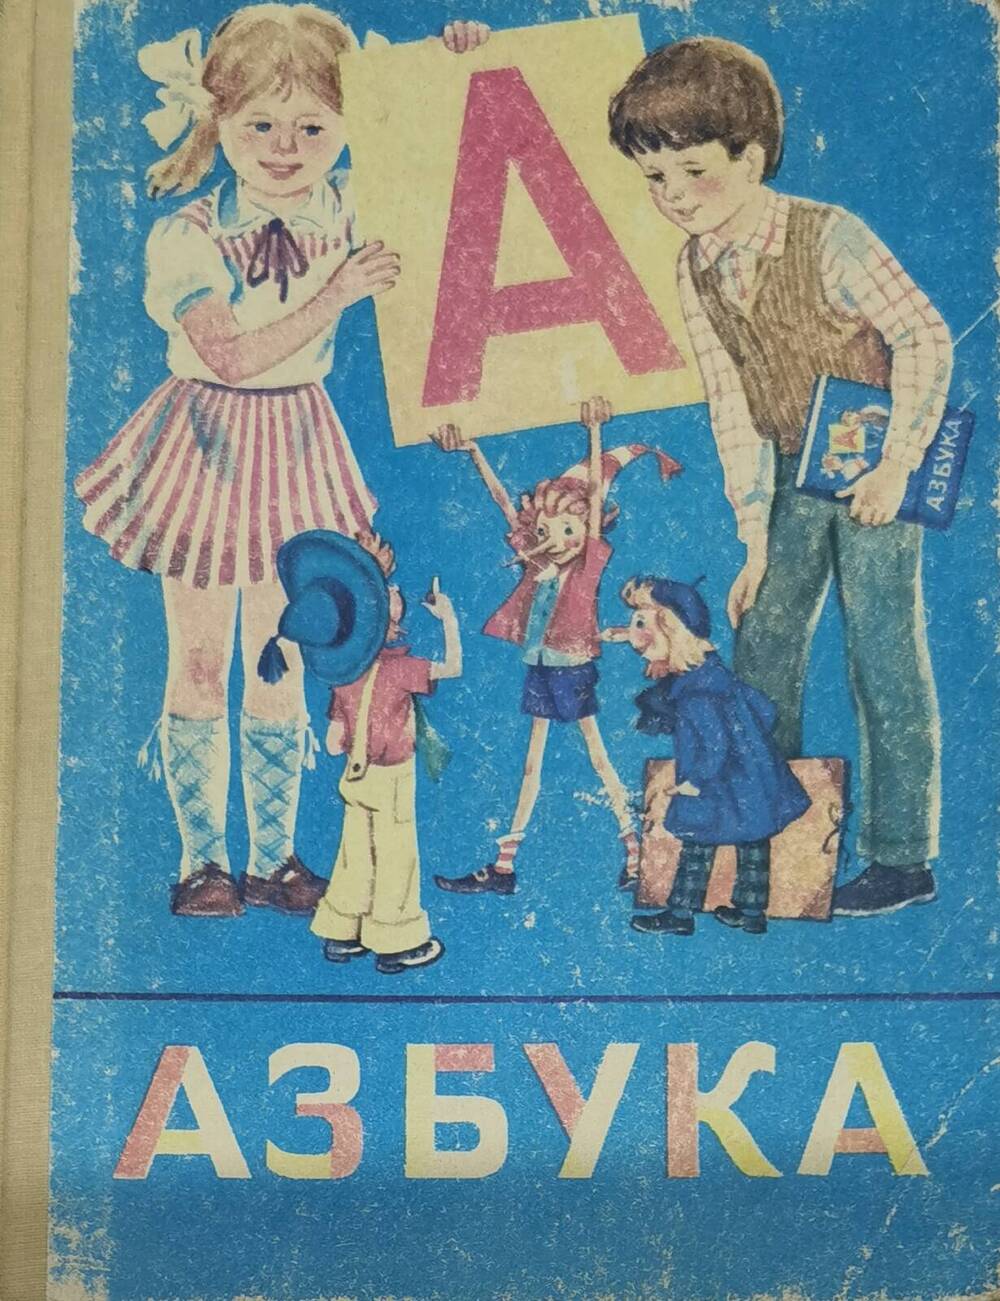 Учебник Азбука для 1 класса четырехлетней начальной школы. 1995 г.